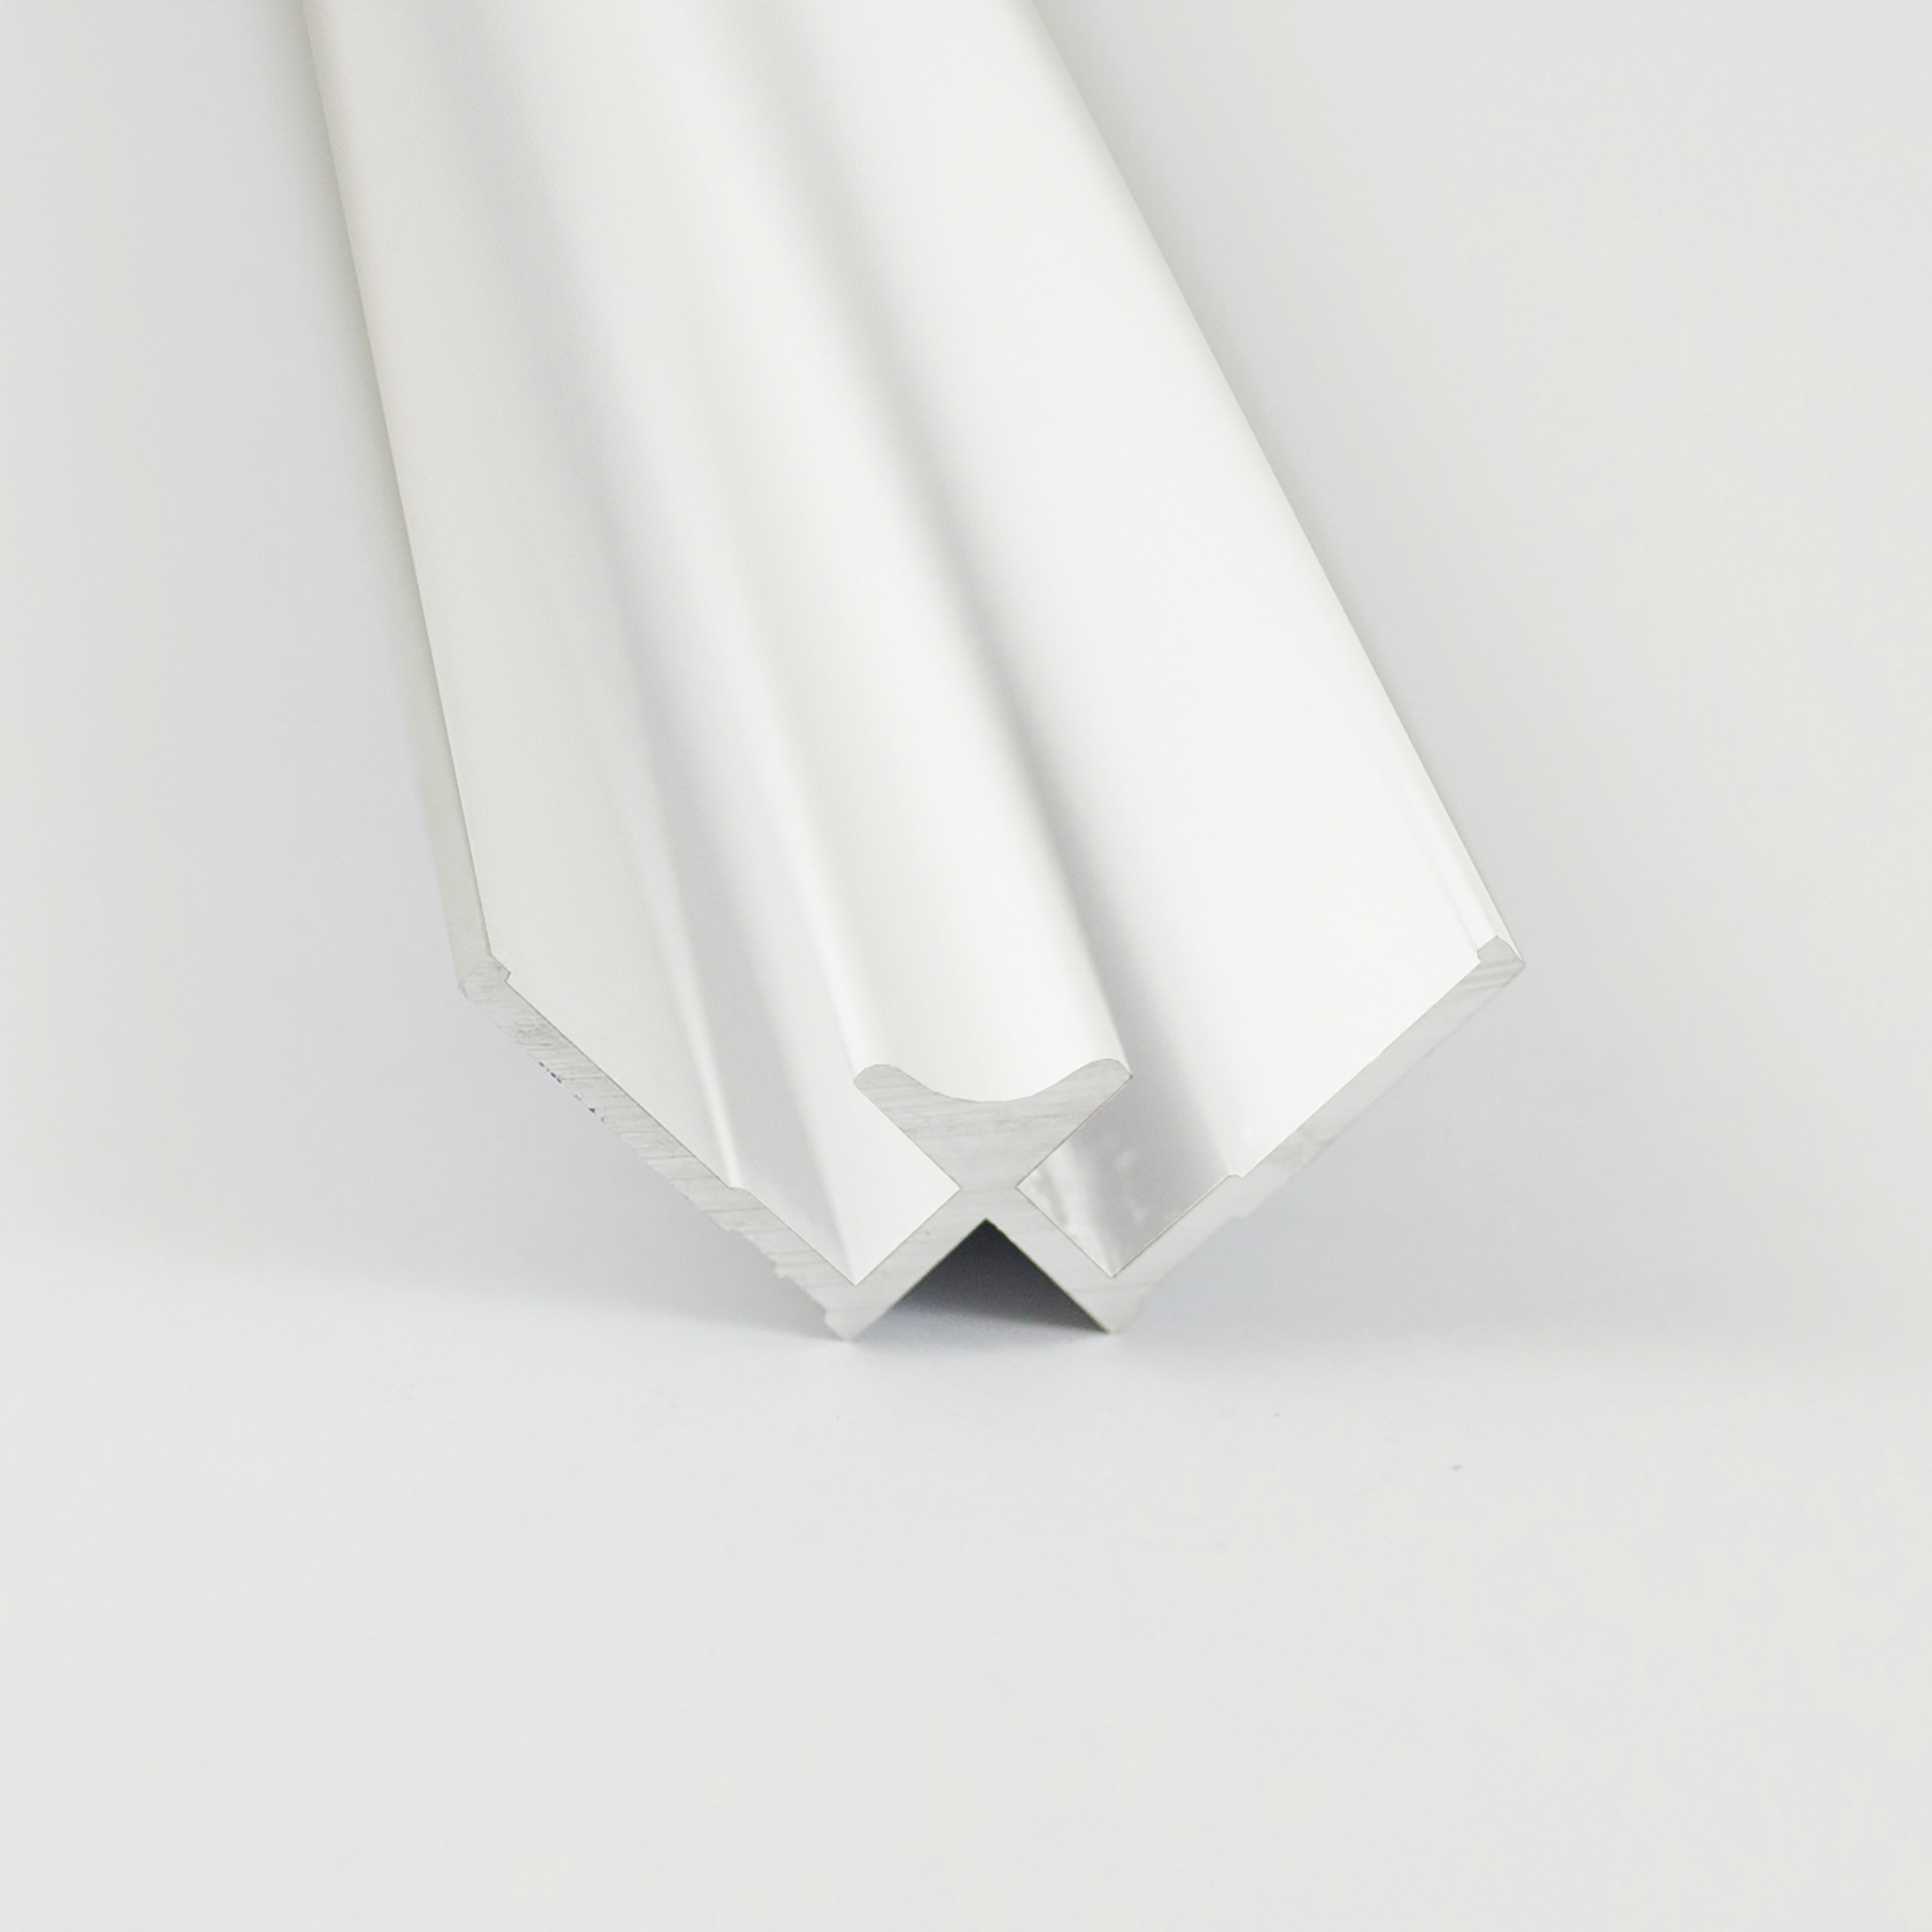 Verbindungsprofil für Rückwandplatten, Ecke innen, weiß, 2100 mm + product picture